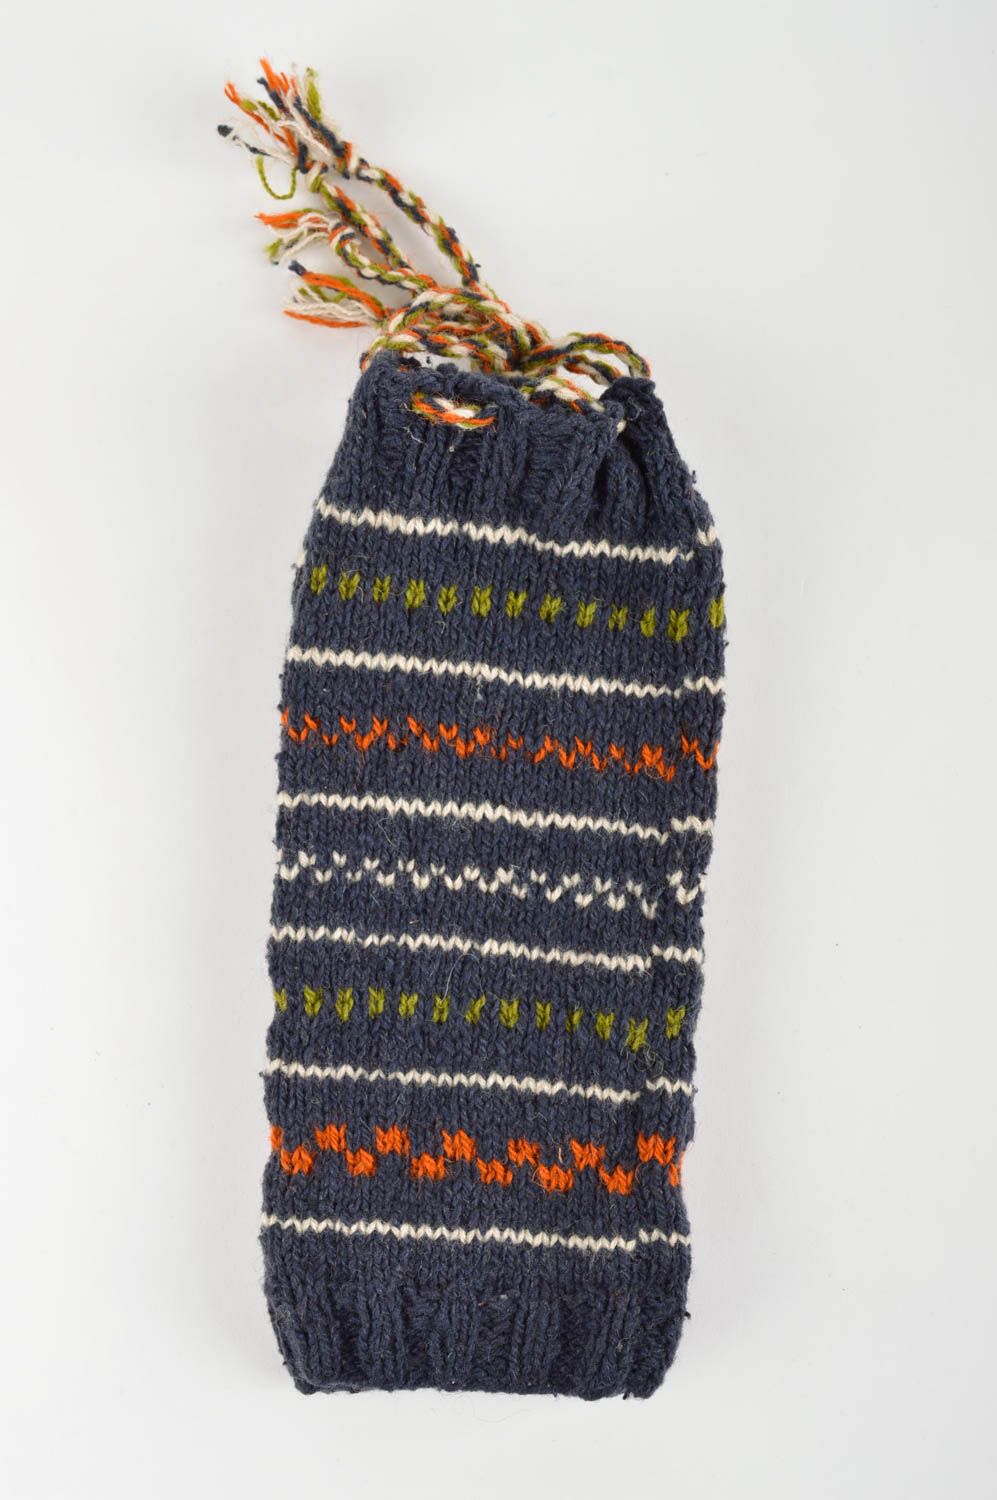 Handmade knitted socks warm woolen winter socks winter accessories for women photo 3